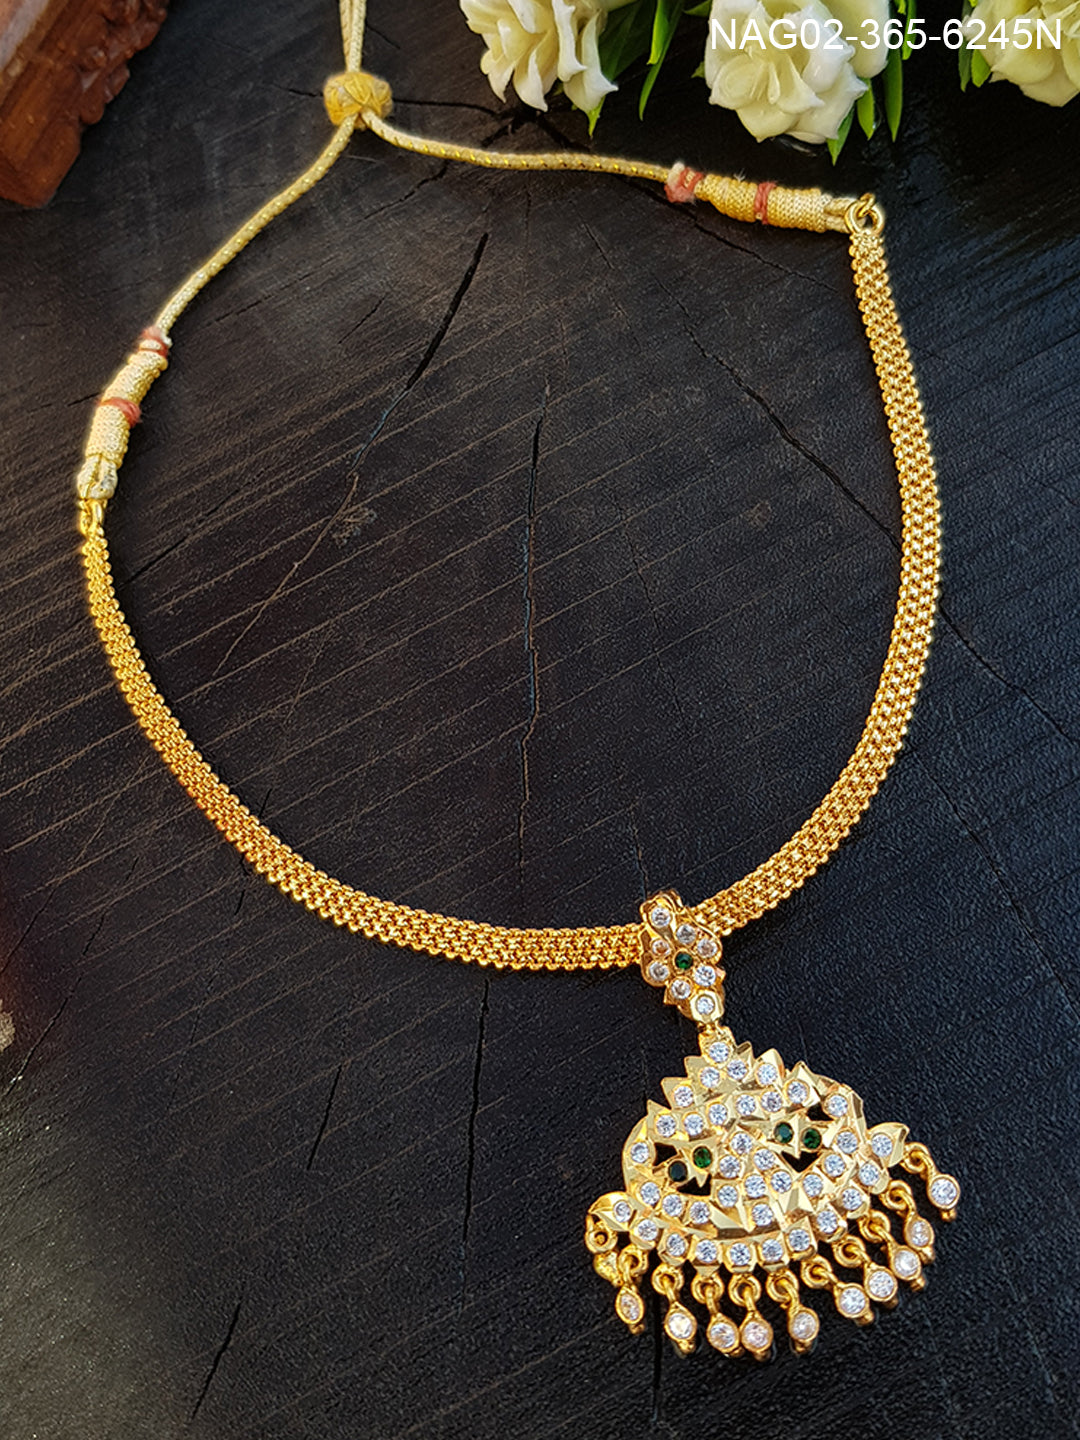 Gatti jewllery (impon jewelry) necklace set 6245N